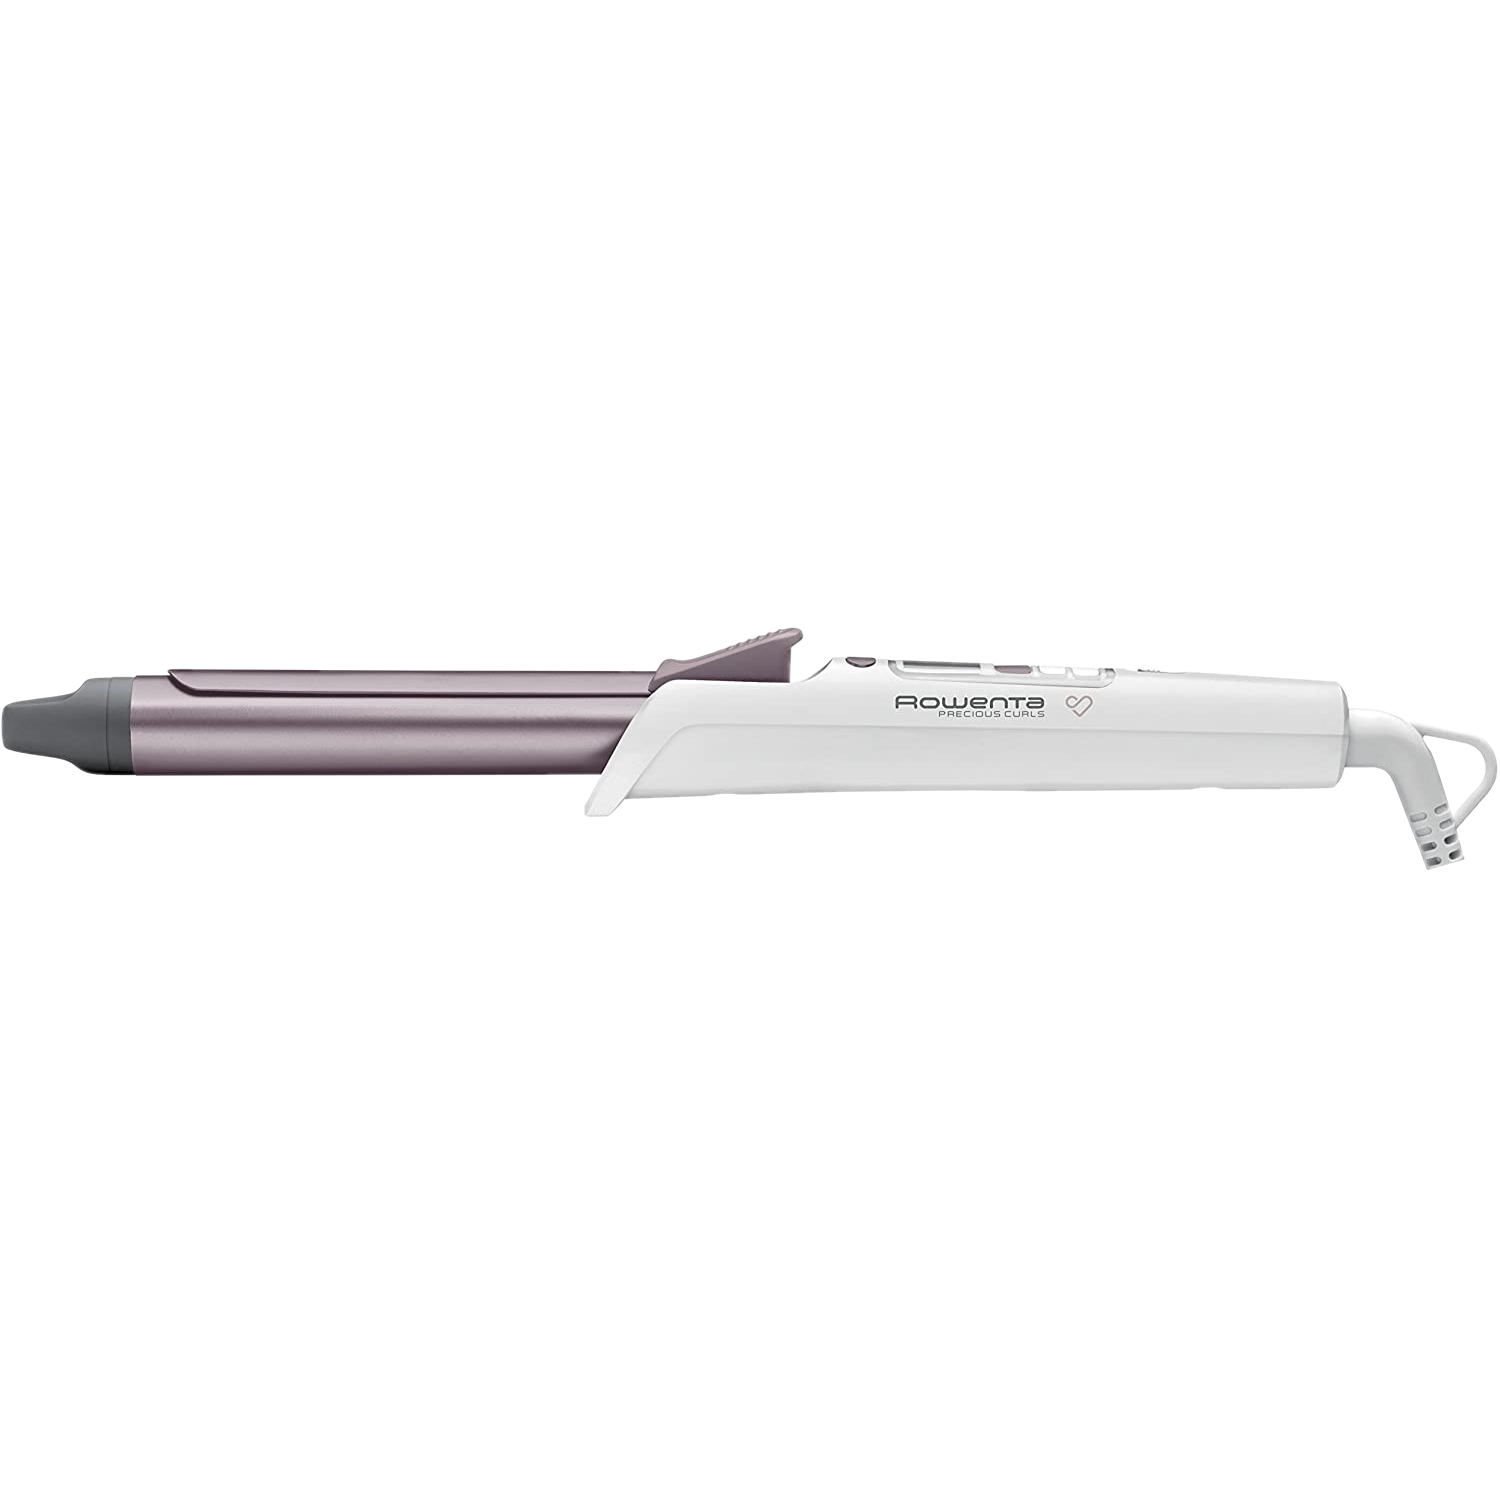 Rowenta Precious Curl cf3460 rizador con recubrimiento keratin and shine temperatura hasta 200ºc cable 360º y pantalla lcd 25 mm de moldeador blanco cf3460f0 premium 1.8m